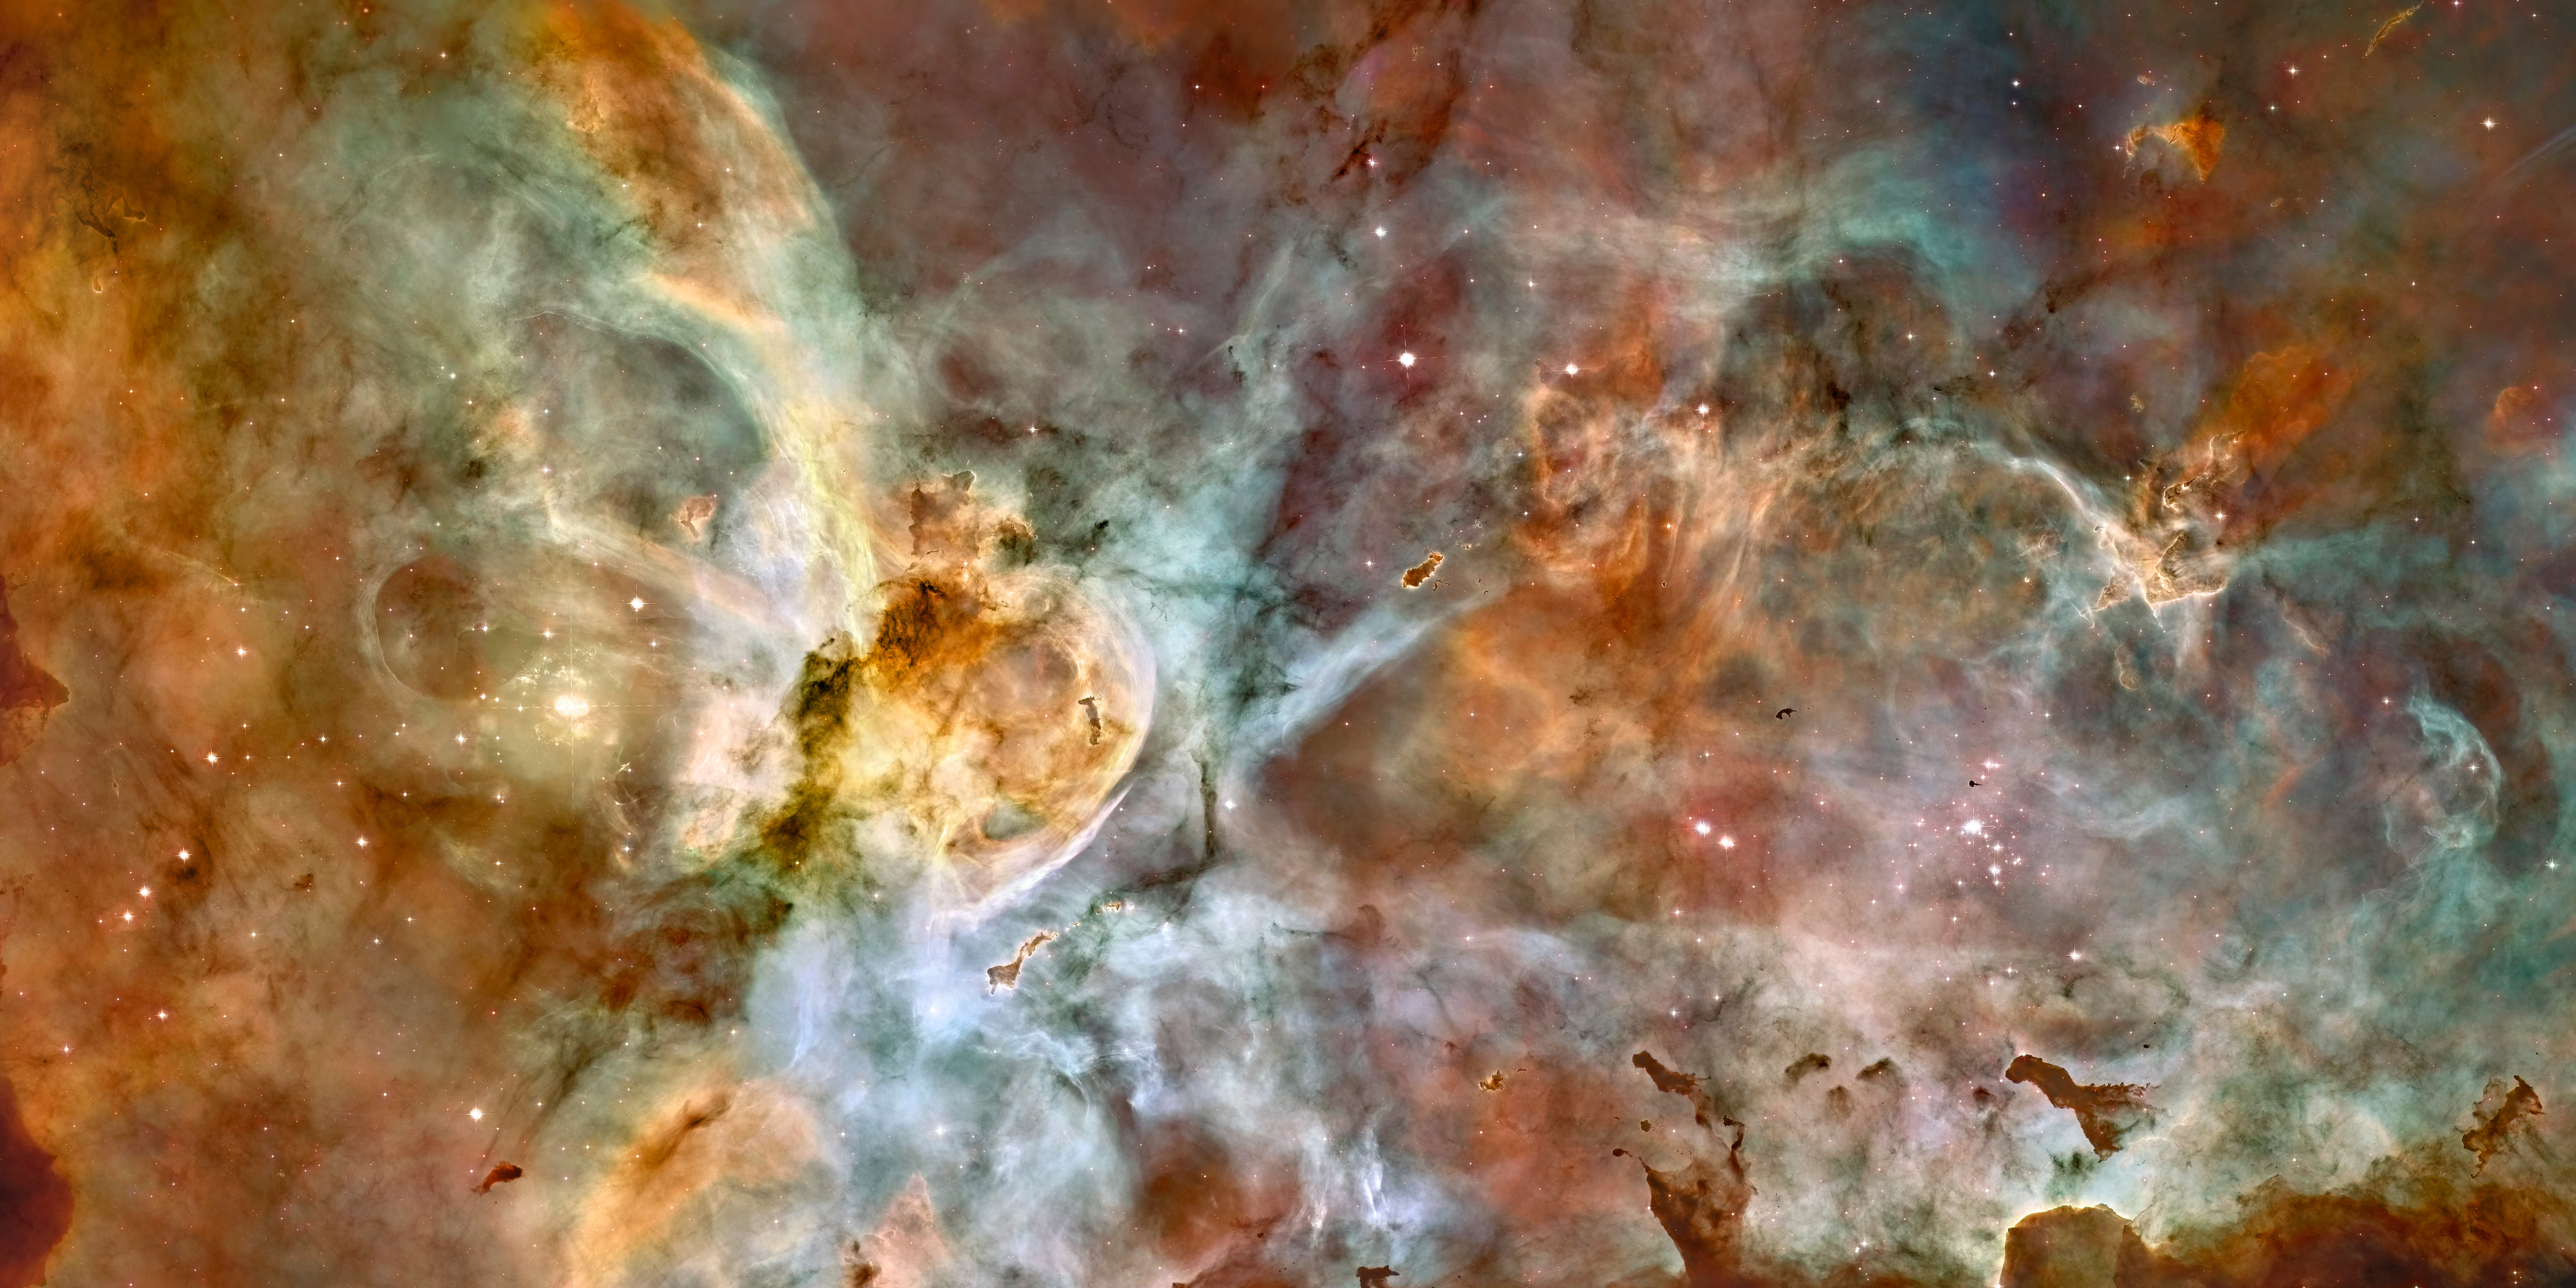 HubbleSite: Image - The Carina Nebula in Full Color